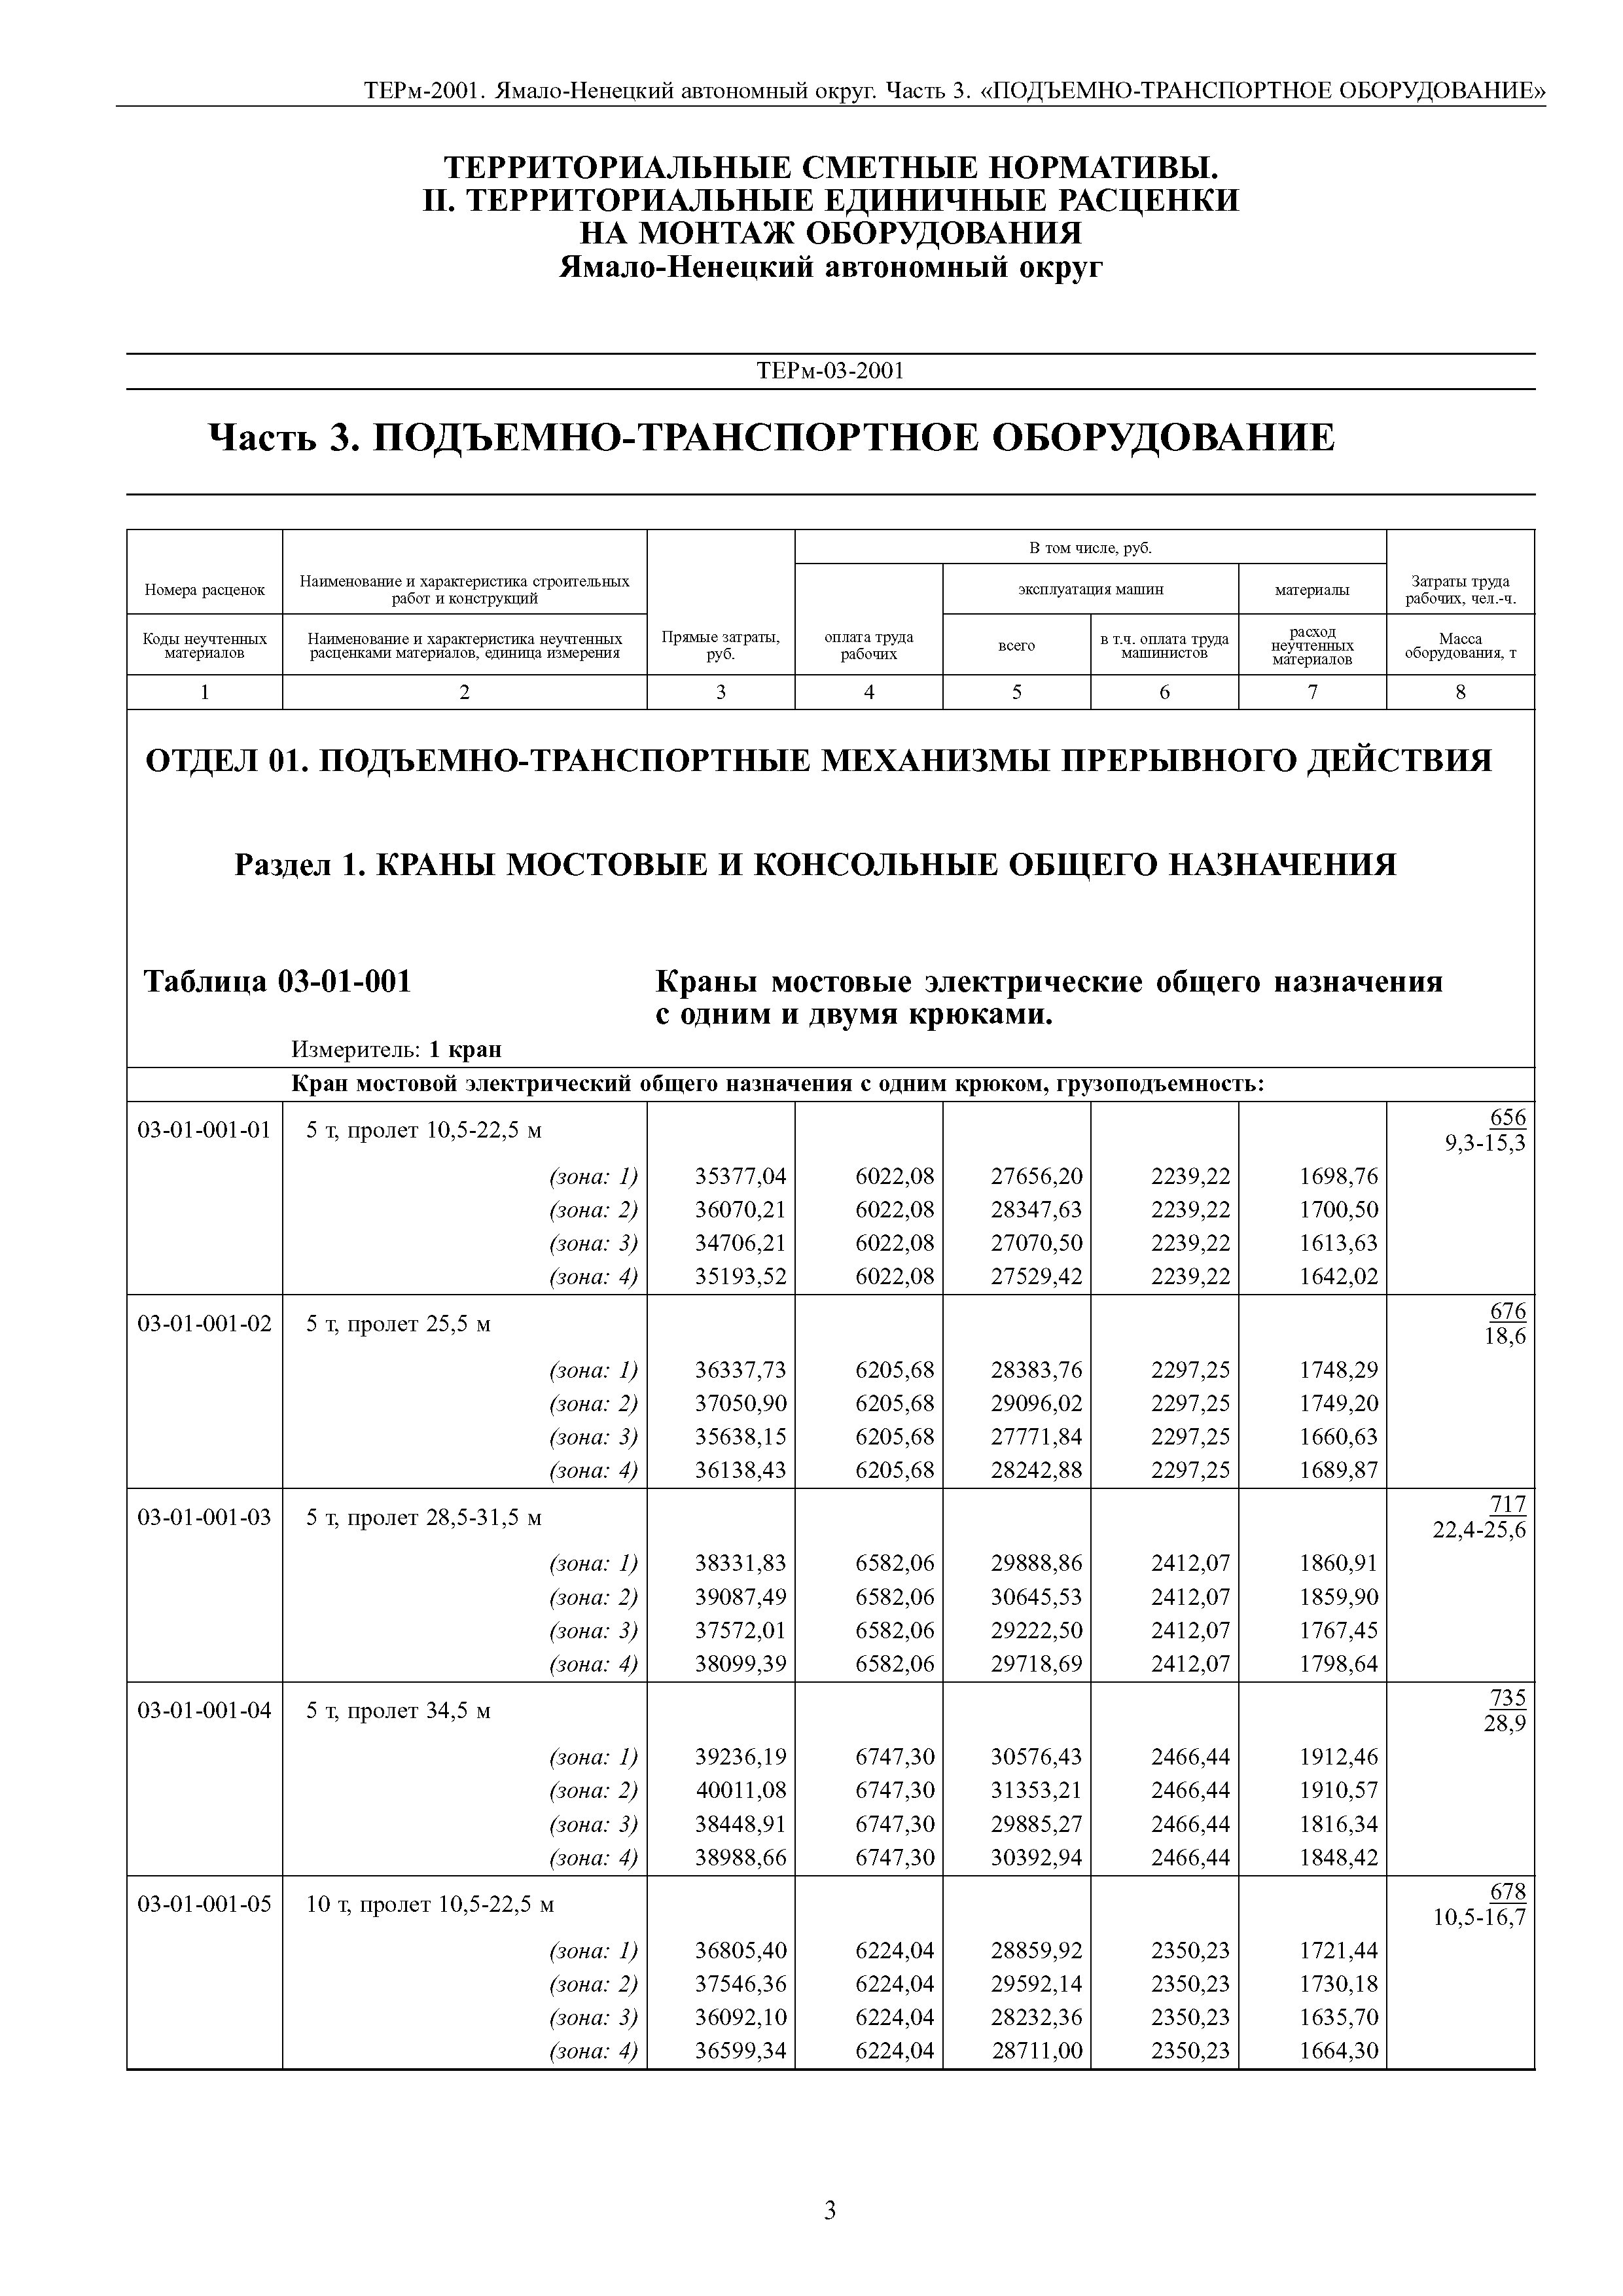 ТЕРм Ямало-Ненецкий автономный округ 03-2001